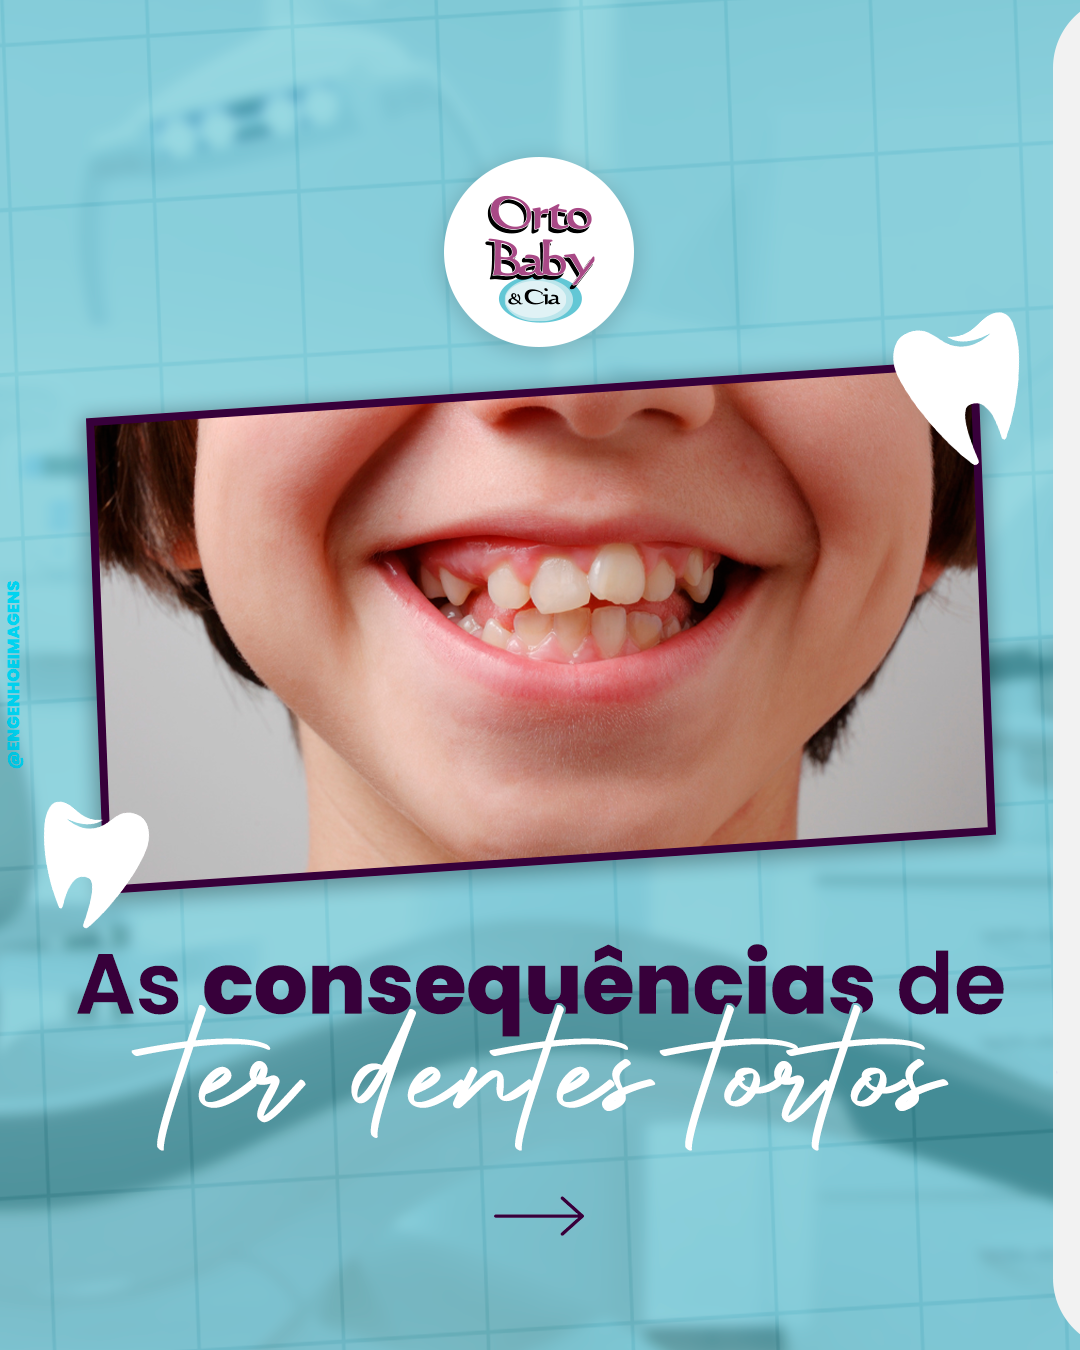 Sorriso Saudável: A Importância do Alinhamento Dental